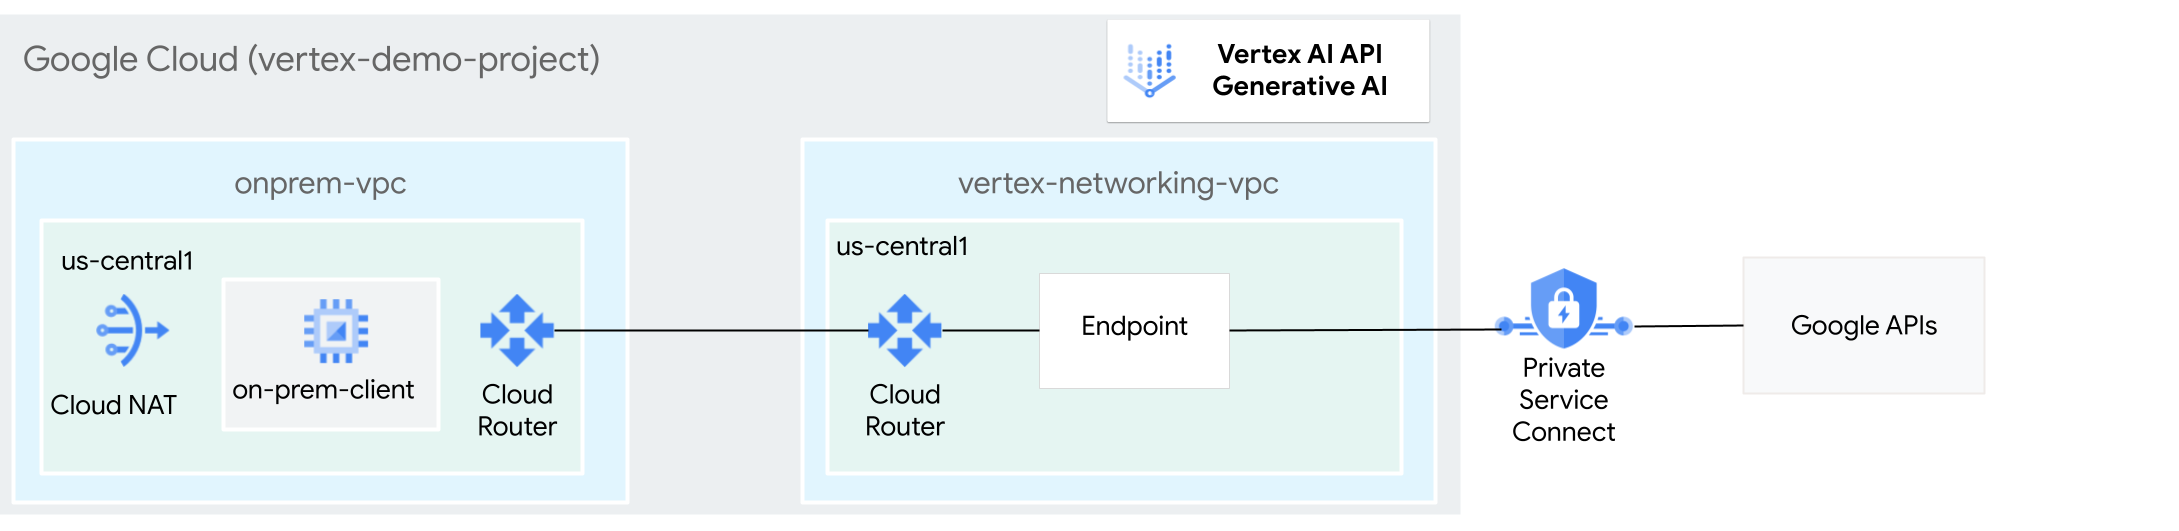 使用 Private Service Connect 访问 Vertex AI 上的生成式 AI 的架构图。